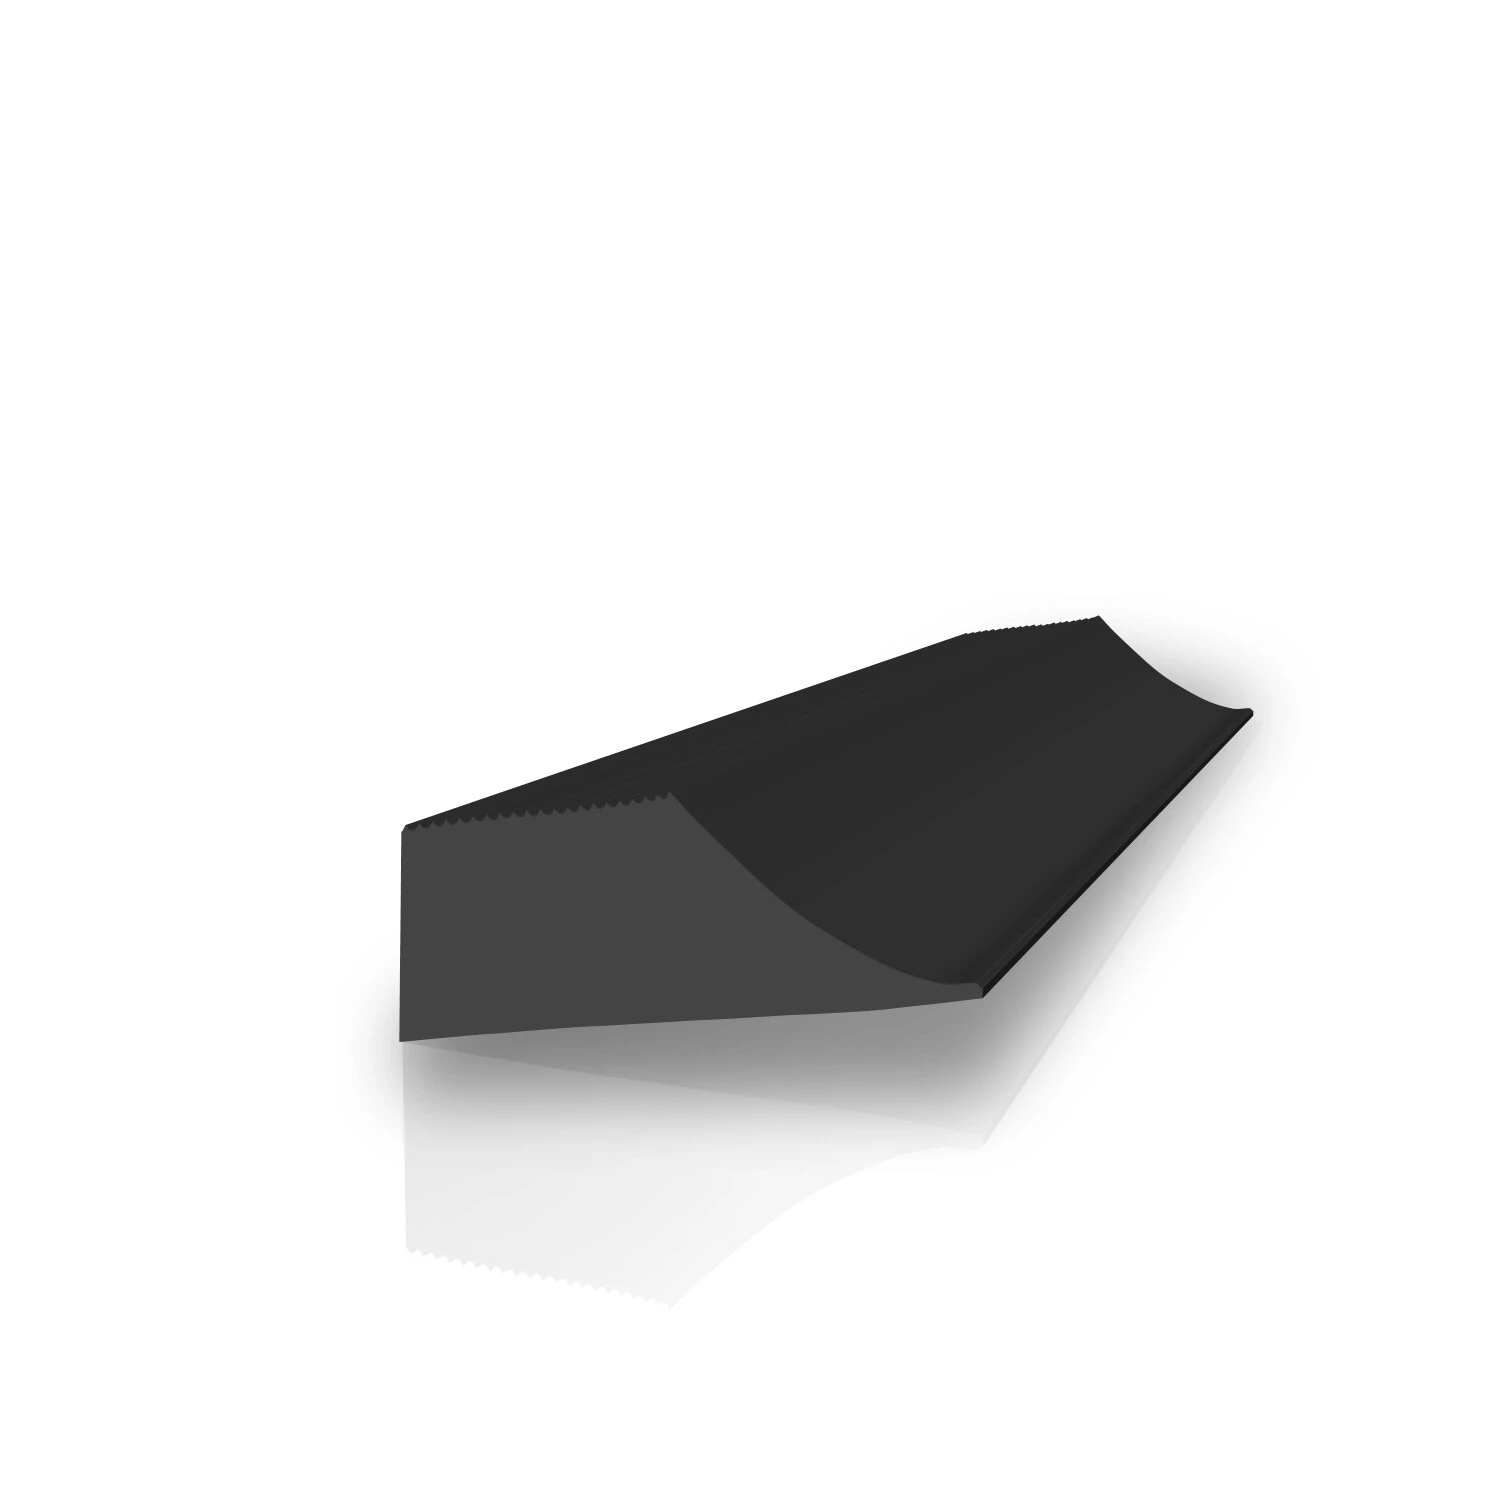 Feinriefenmatte 2,5 mm stark in schwarz